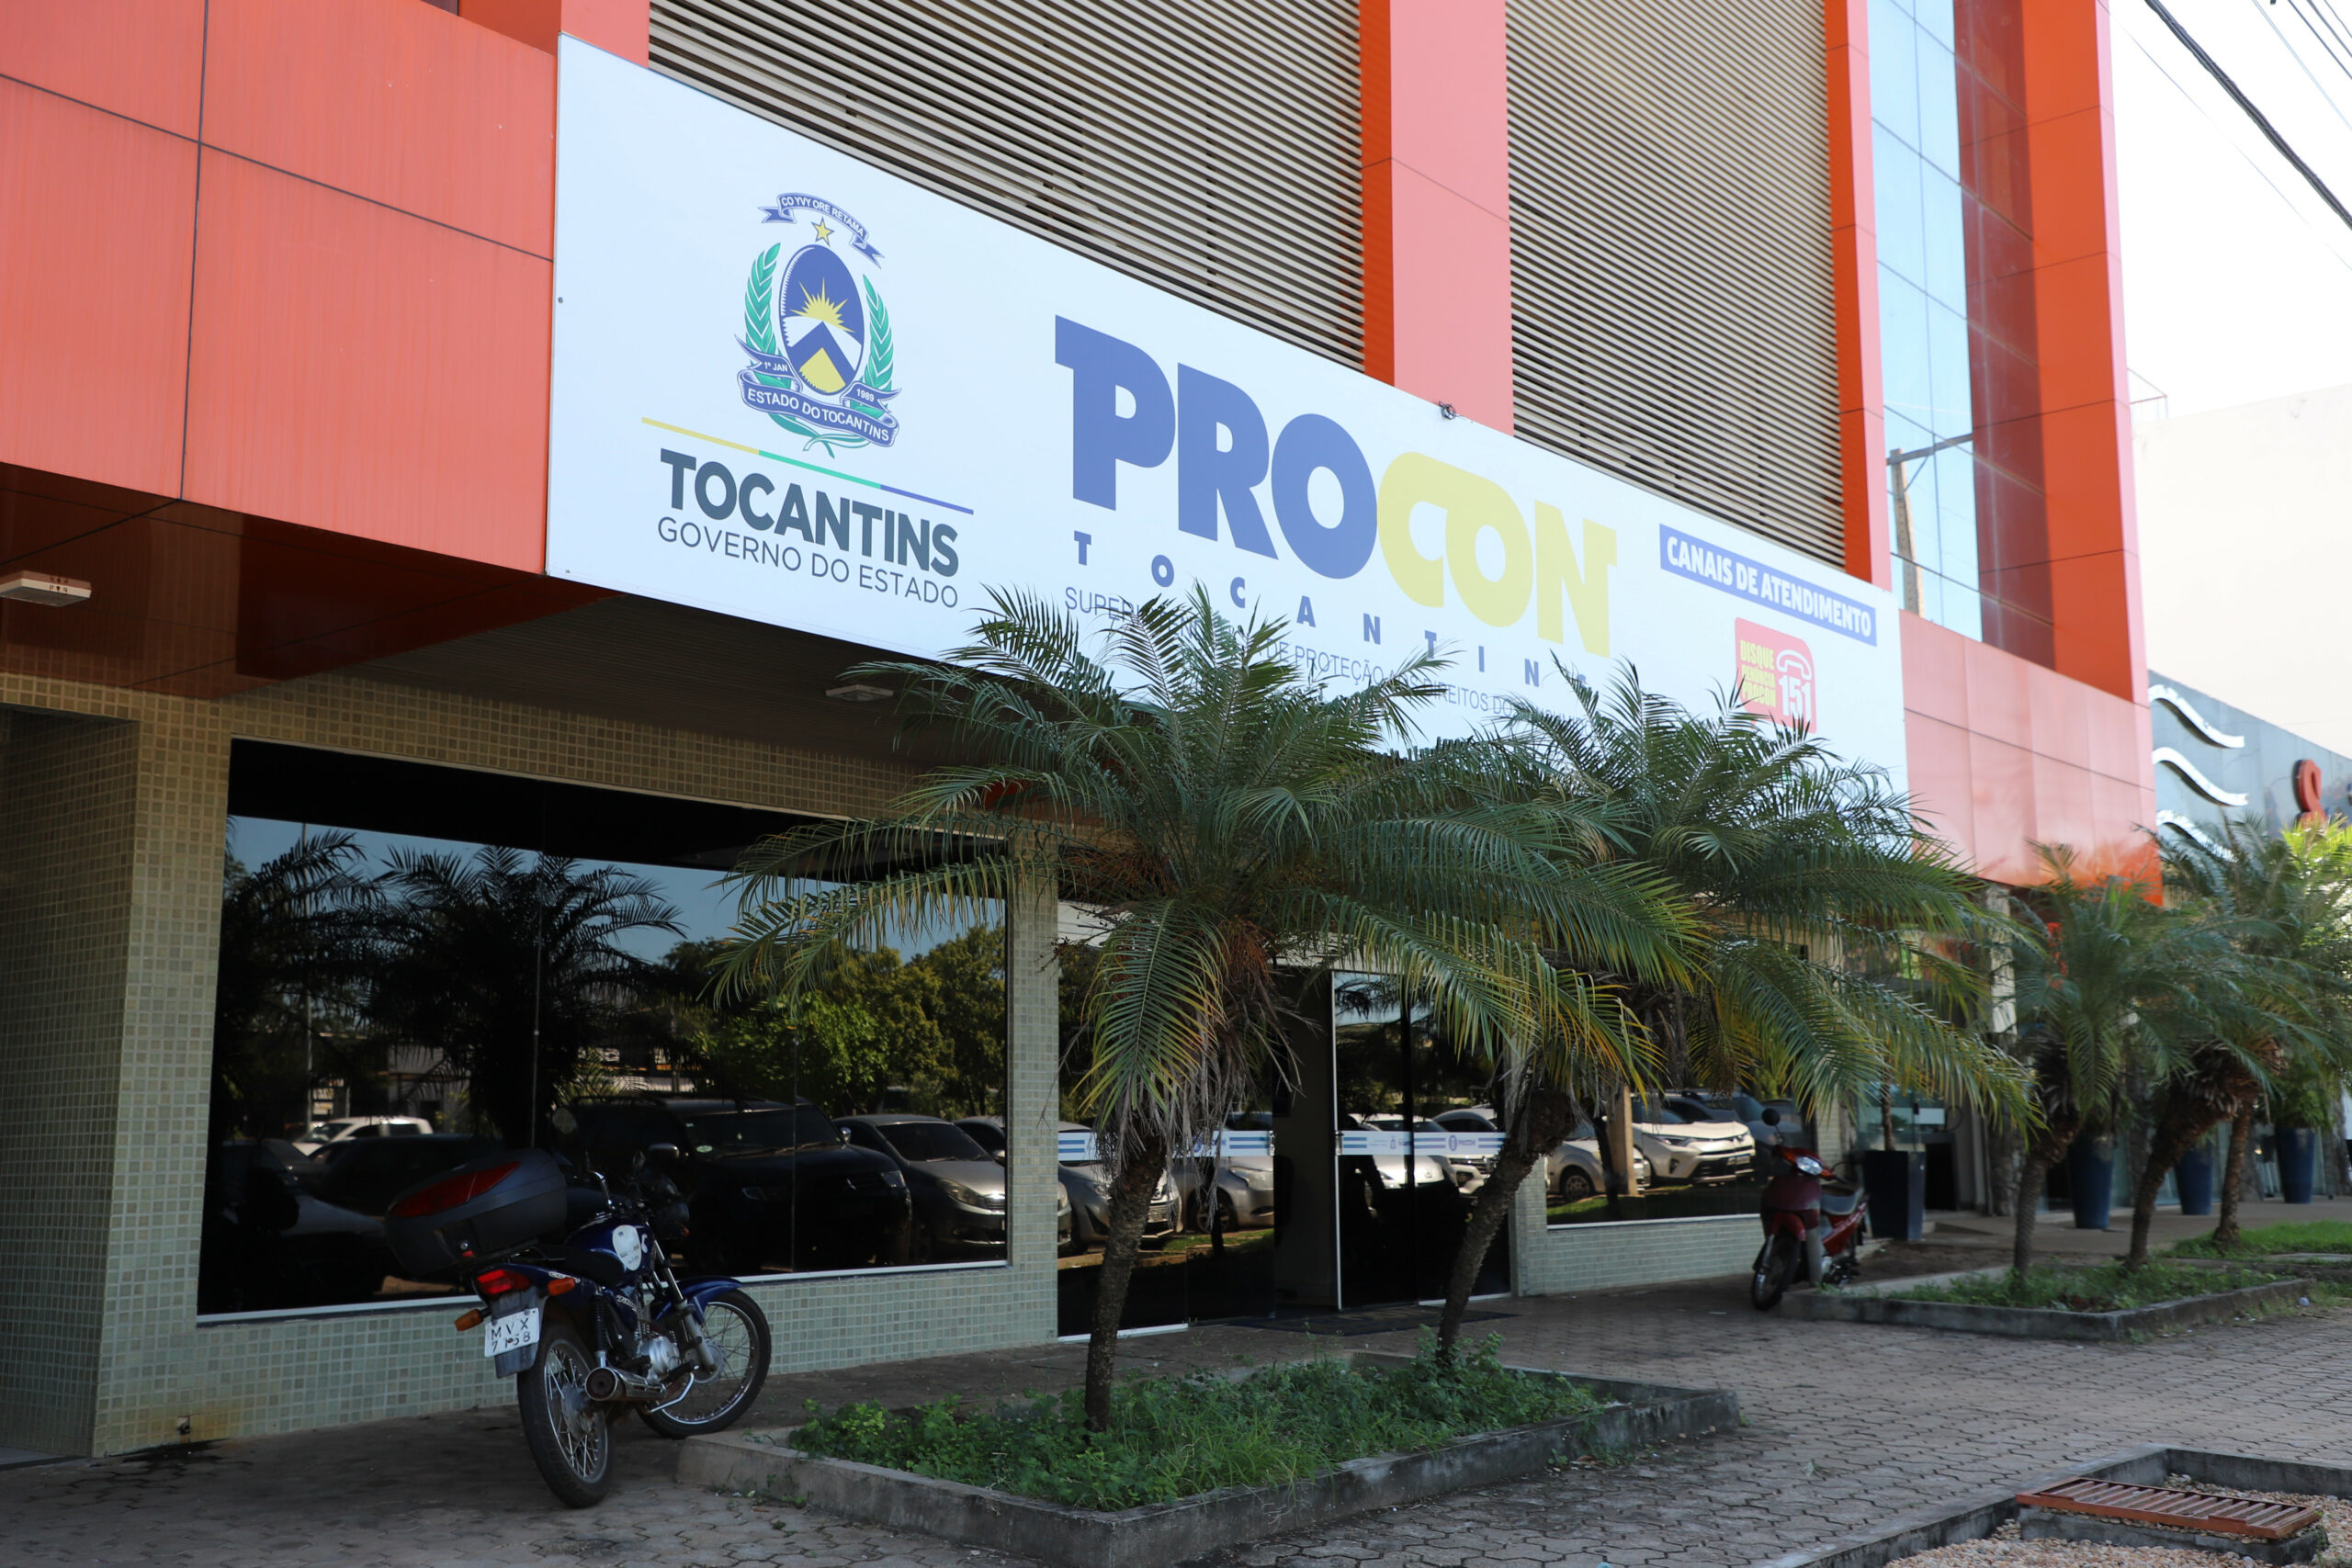 Procon Tocantins realiza Feirão de Renegociação de Dívidas de 7 a 9 de agosto em diversas cidades do TO